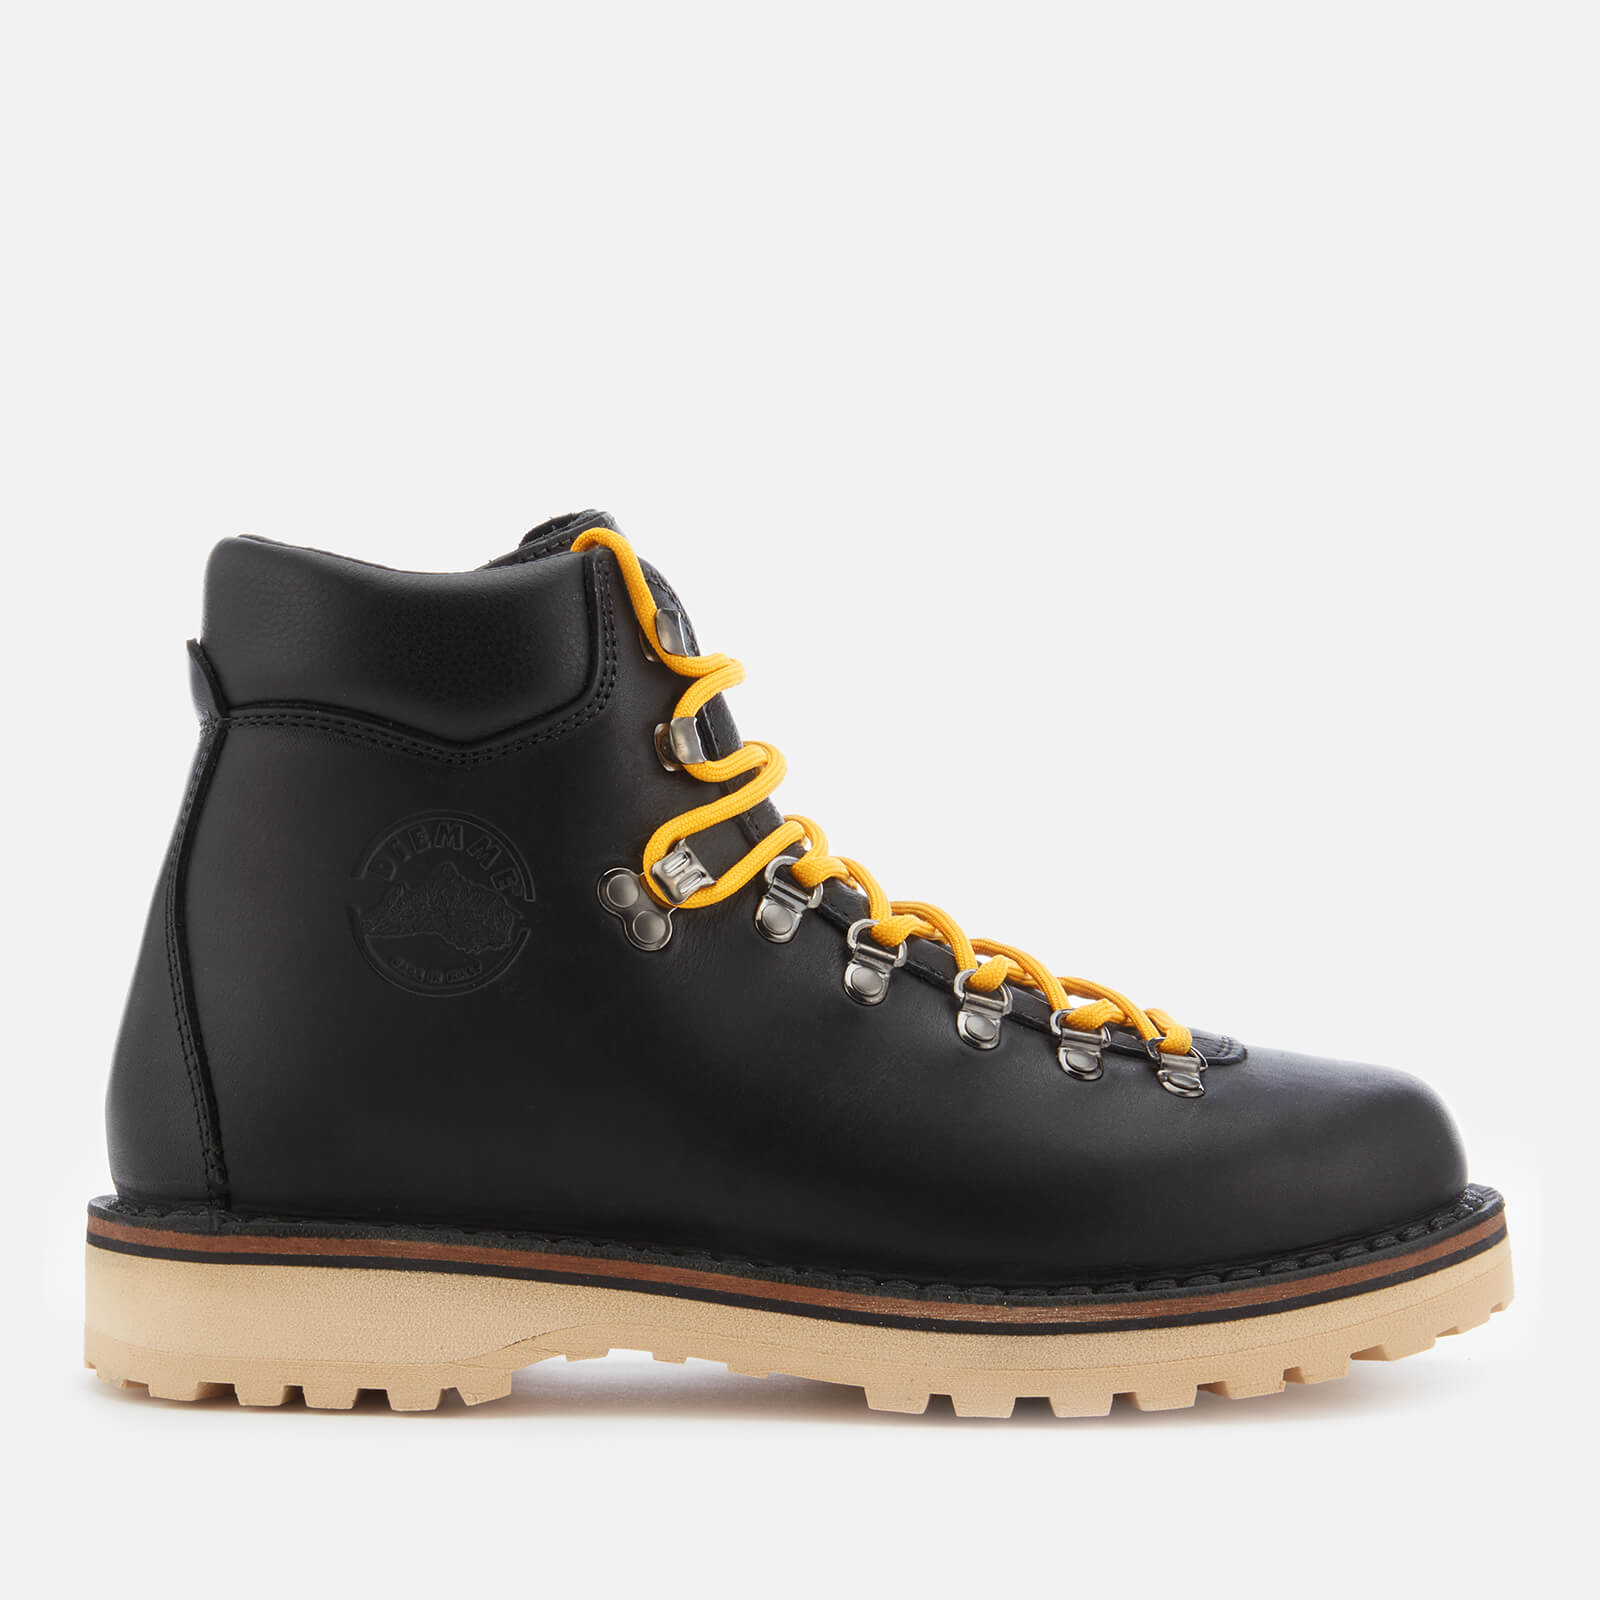 Diemme Men's Roccia Vet Full Grain Leather Lace Up Boots - Black - UK 7 - Black